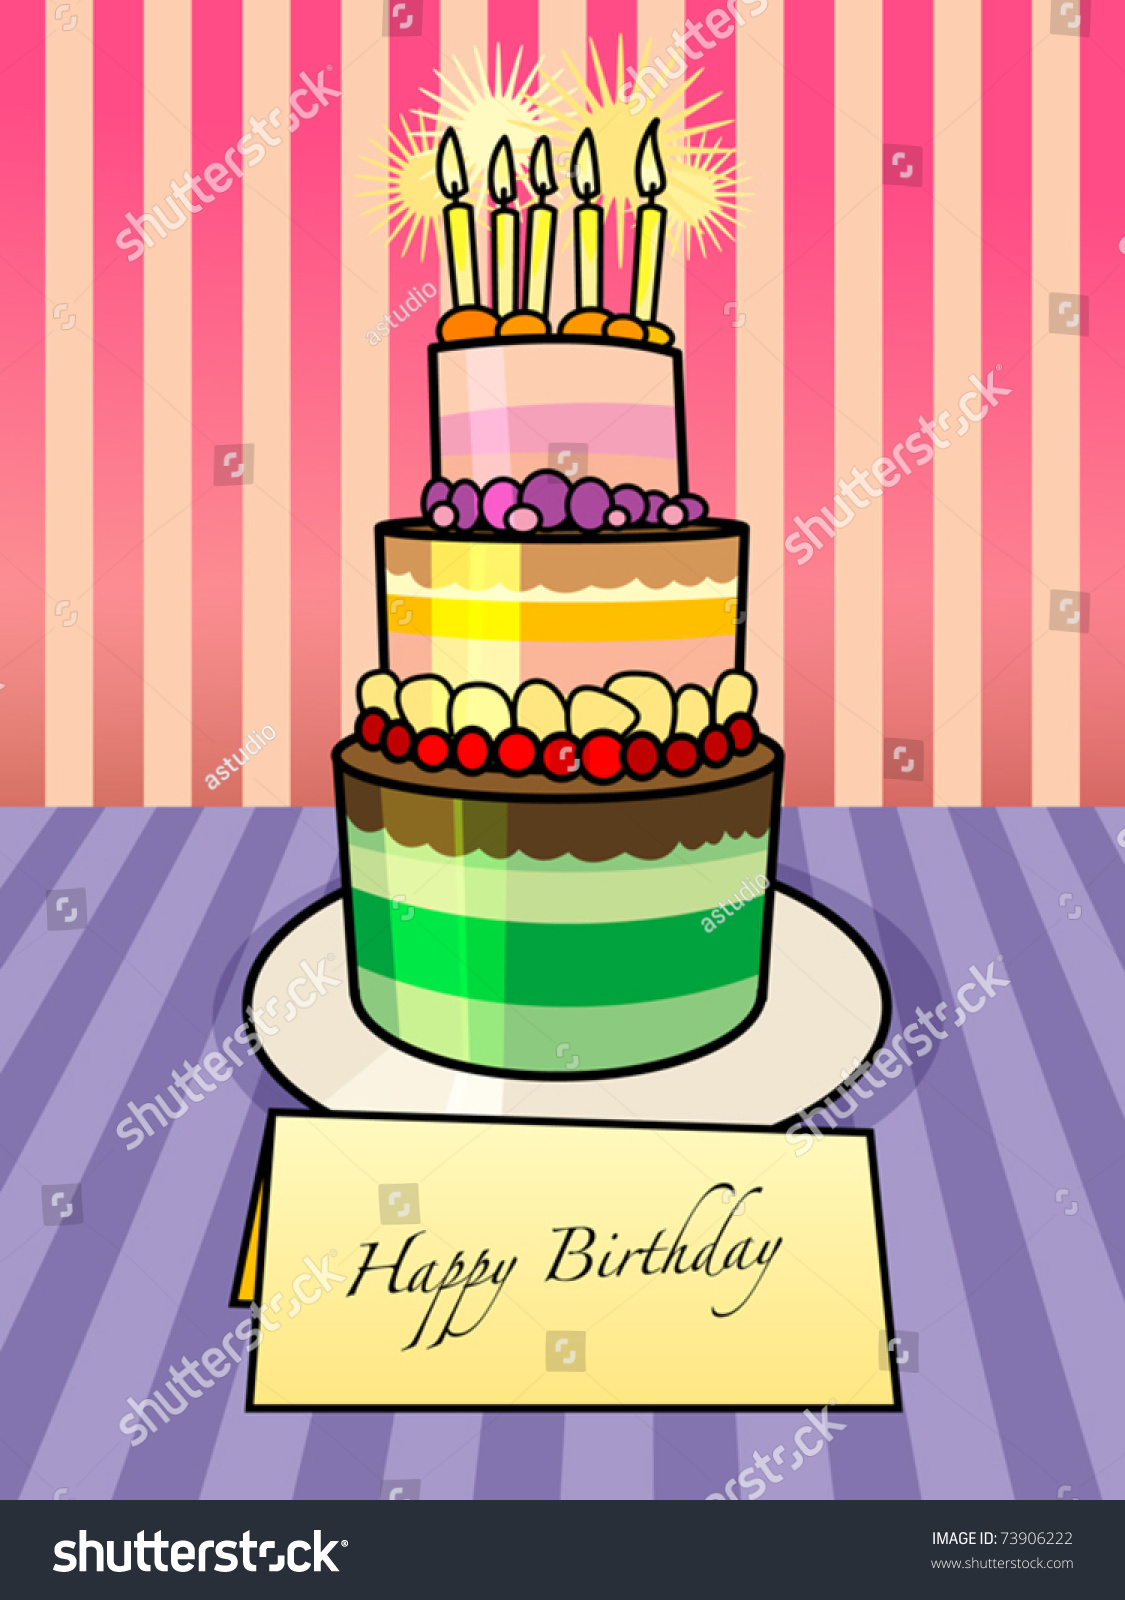 KWELLAM 3pcs Happy Birthday Flowers Cake Candle Nastri di plastica goffratura cartelle per la creazione di biglietti scrapbooking e altri progetti di carta 2012251 